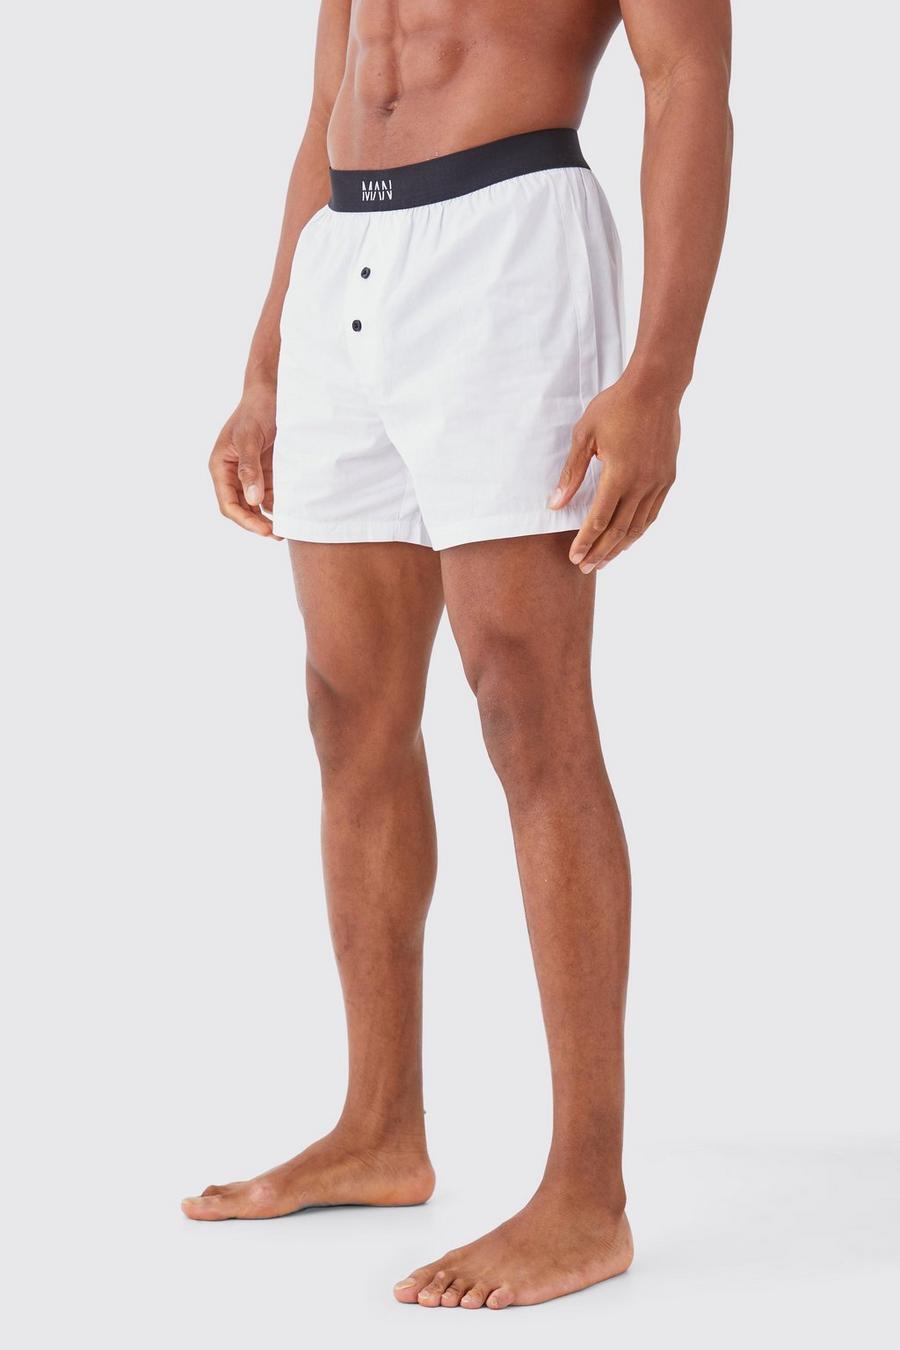 Pantalón corto MAN Original bóxer de tela, White